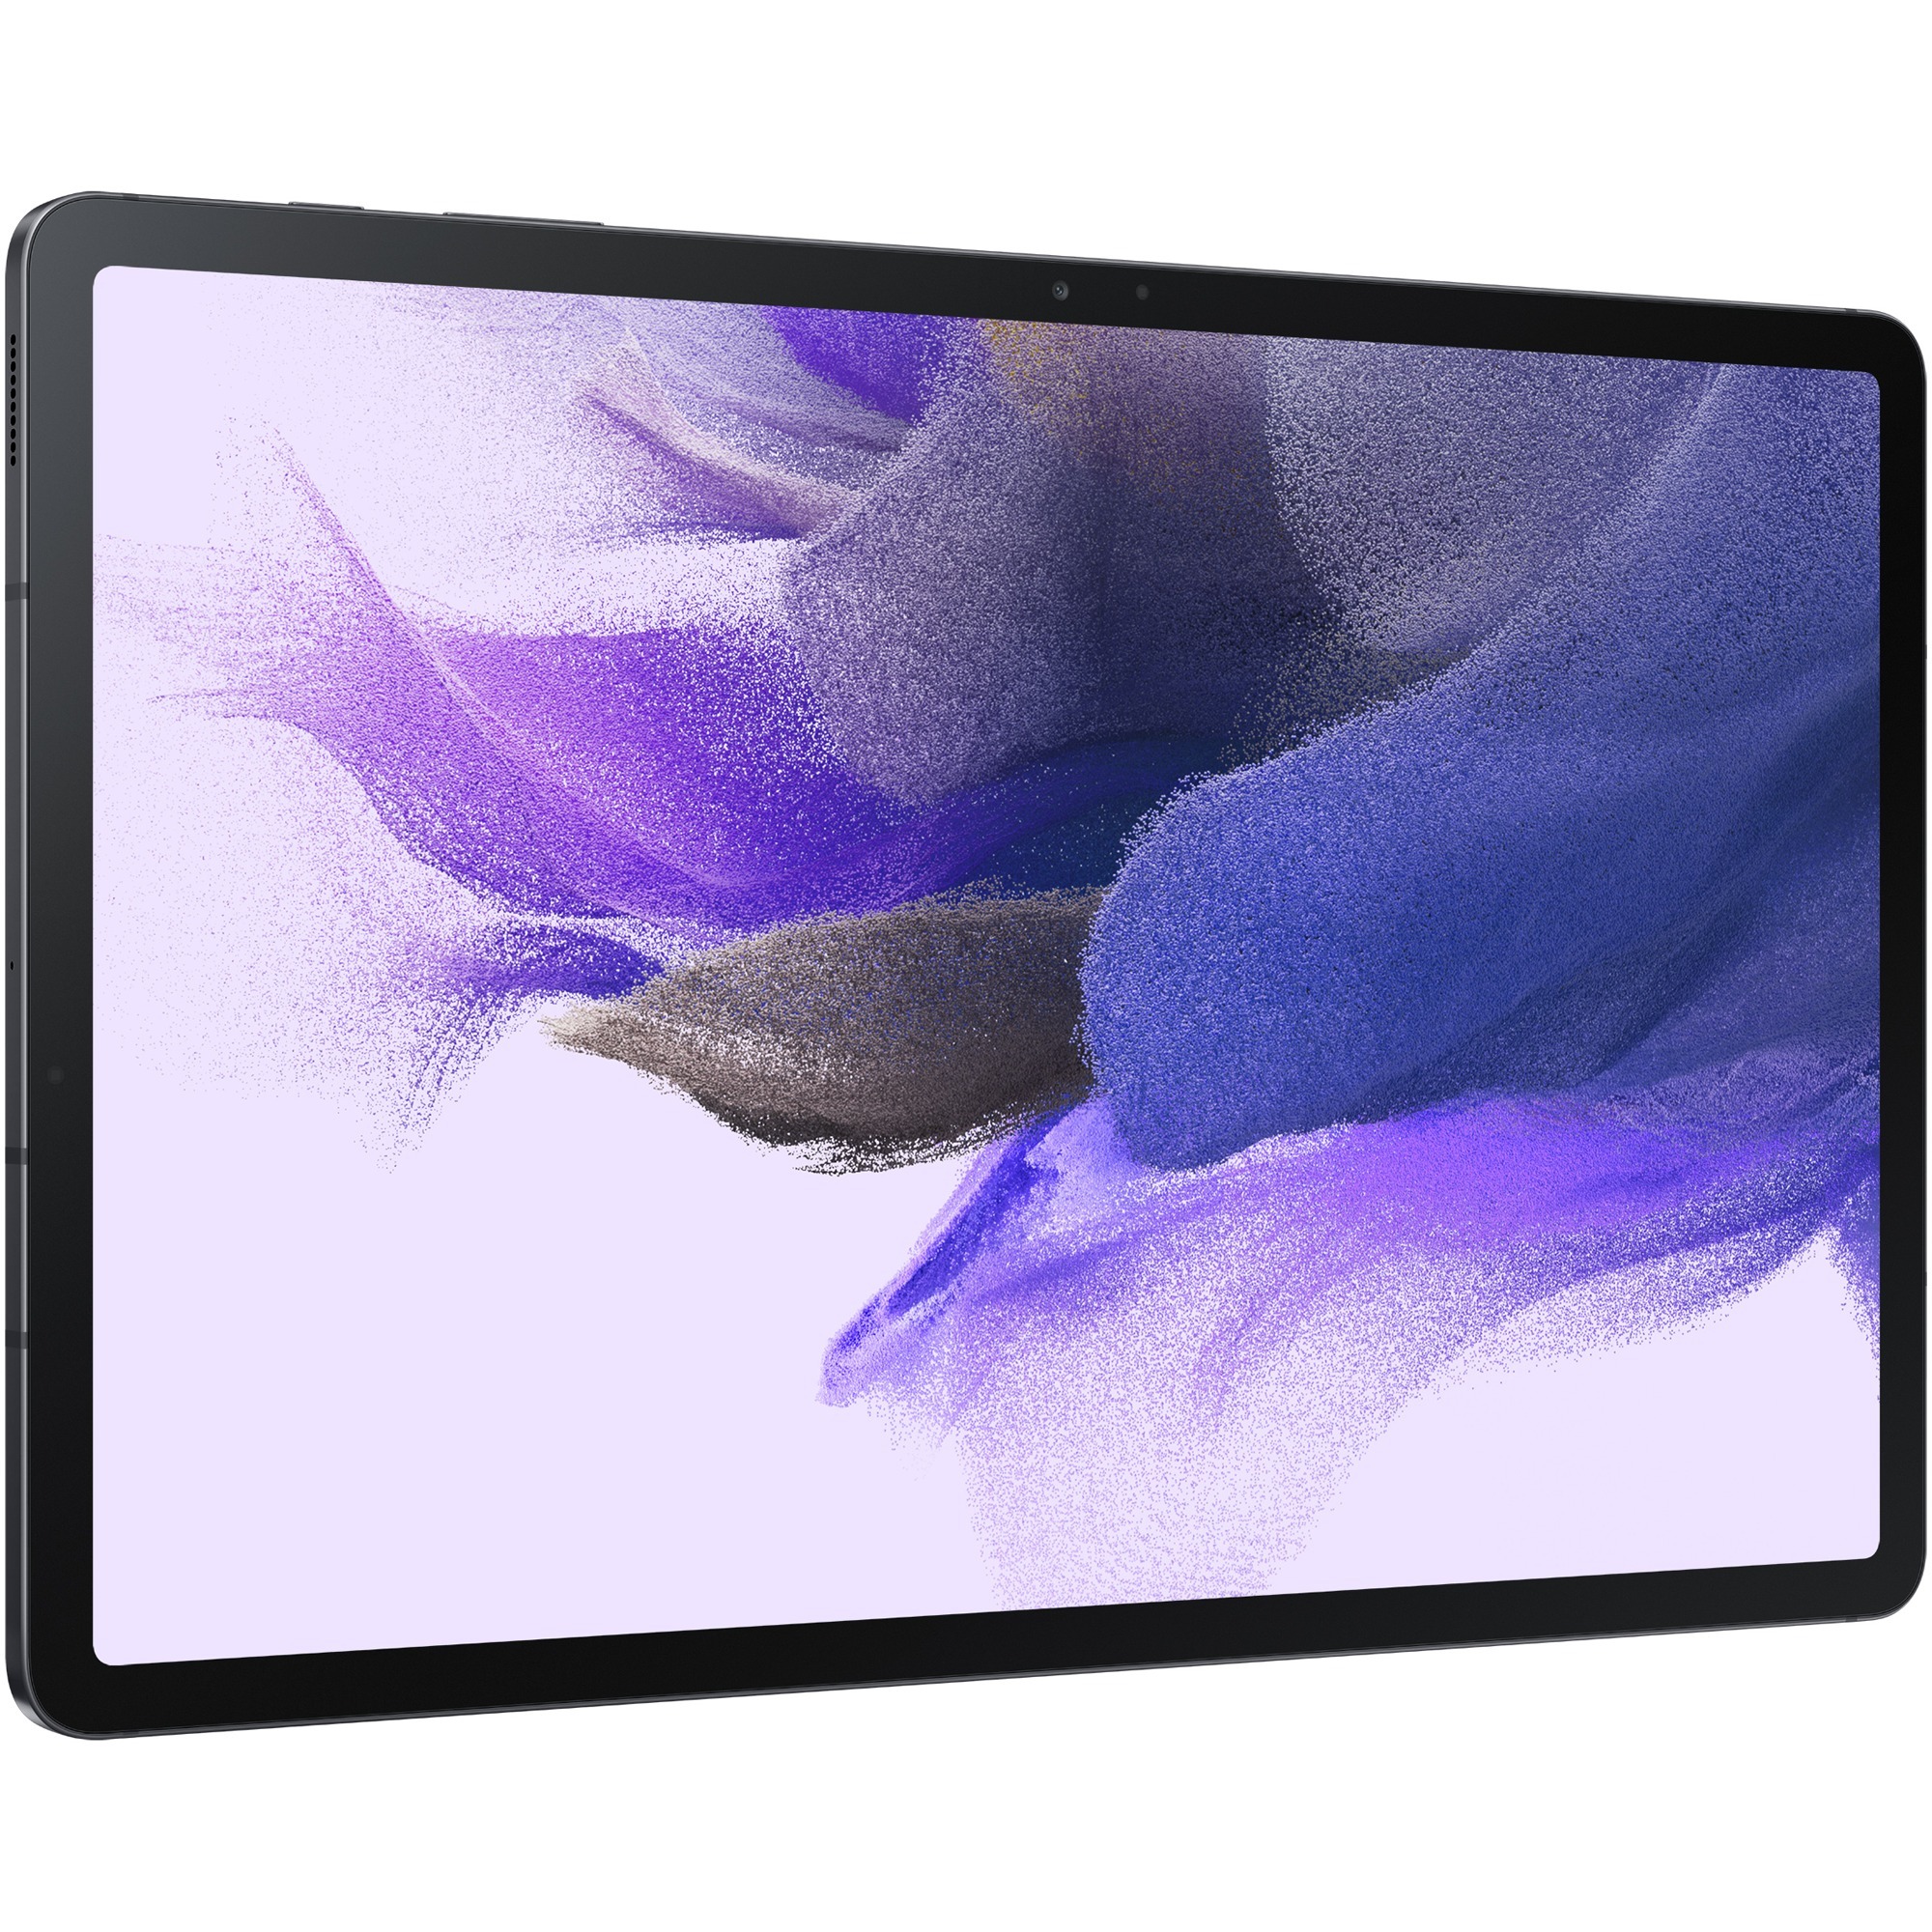 Image of Alternate - Galaxy Tab S7 Enterprise Edition 128GB, Tablet-PC online einkaufen bei Alternate